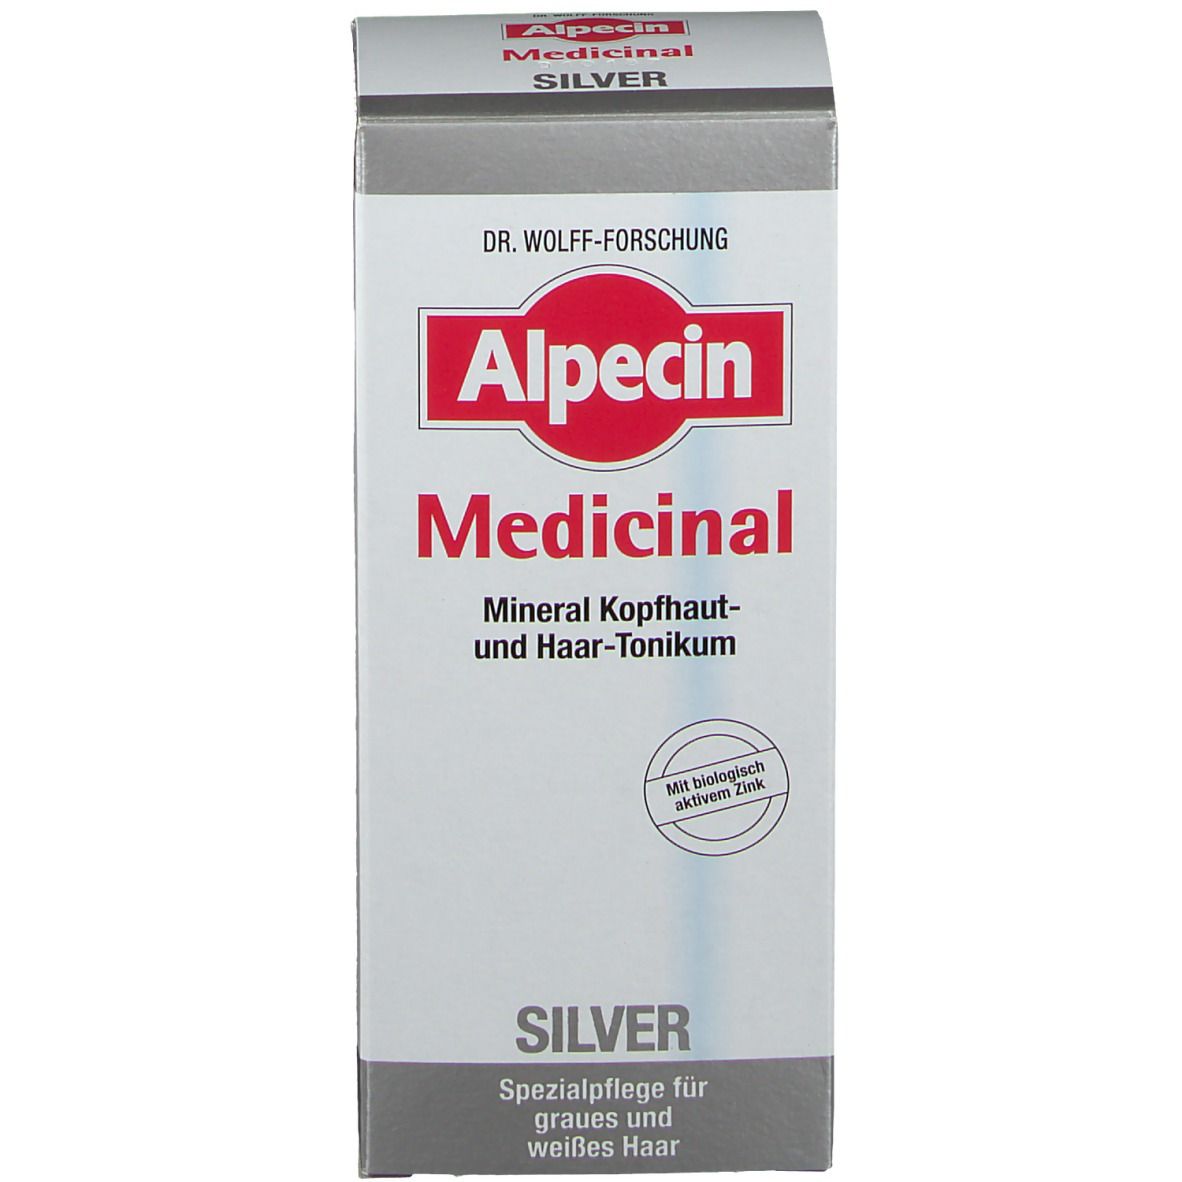 Alpecin Medicinal SILVER Mineral Kopfhaut- und Haar-Tonikum